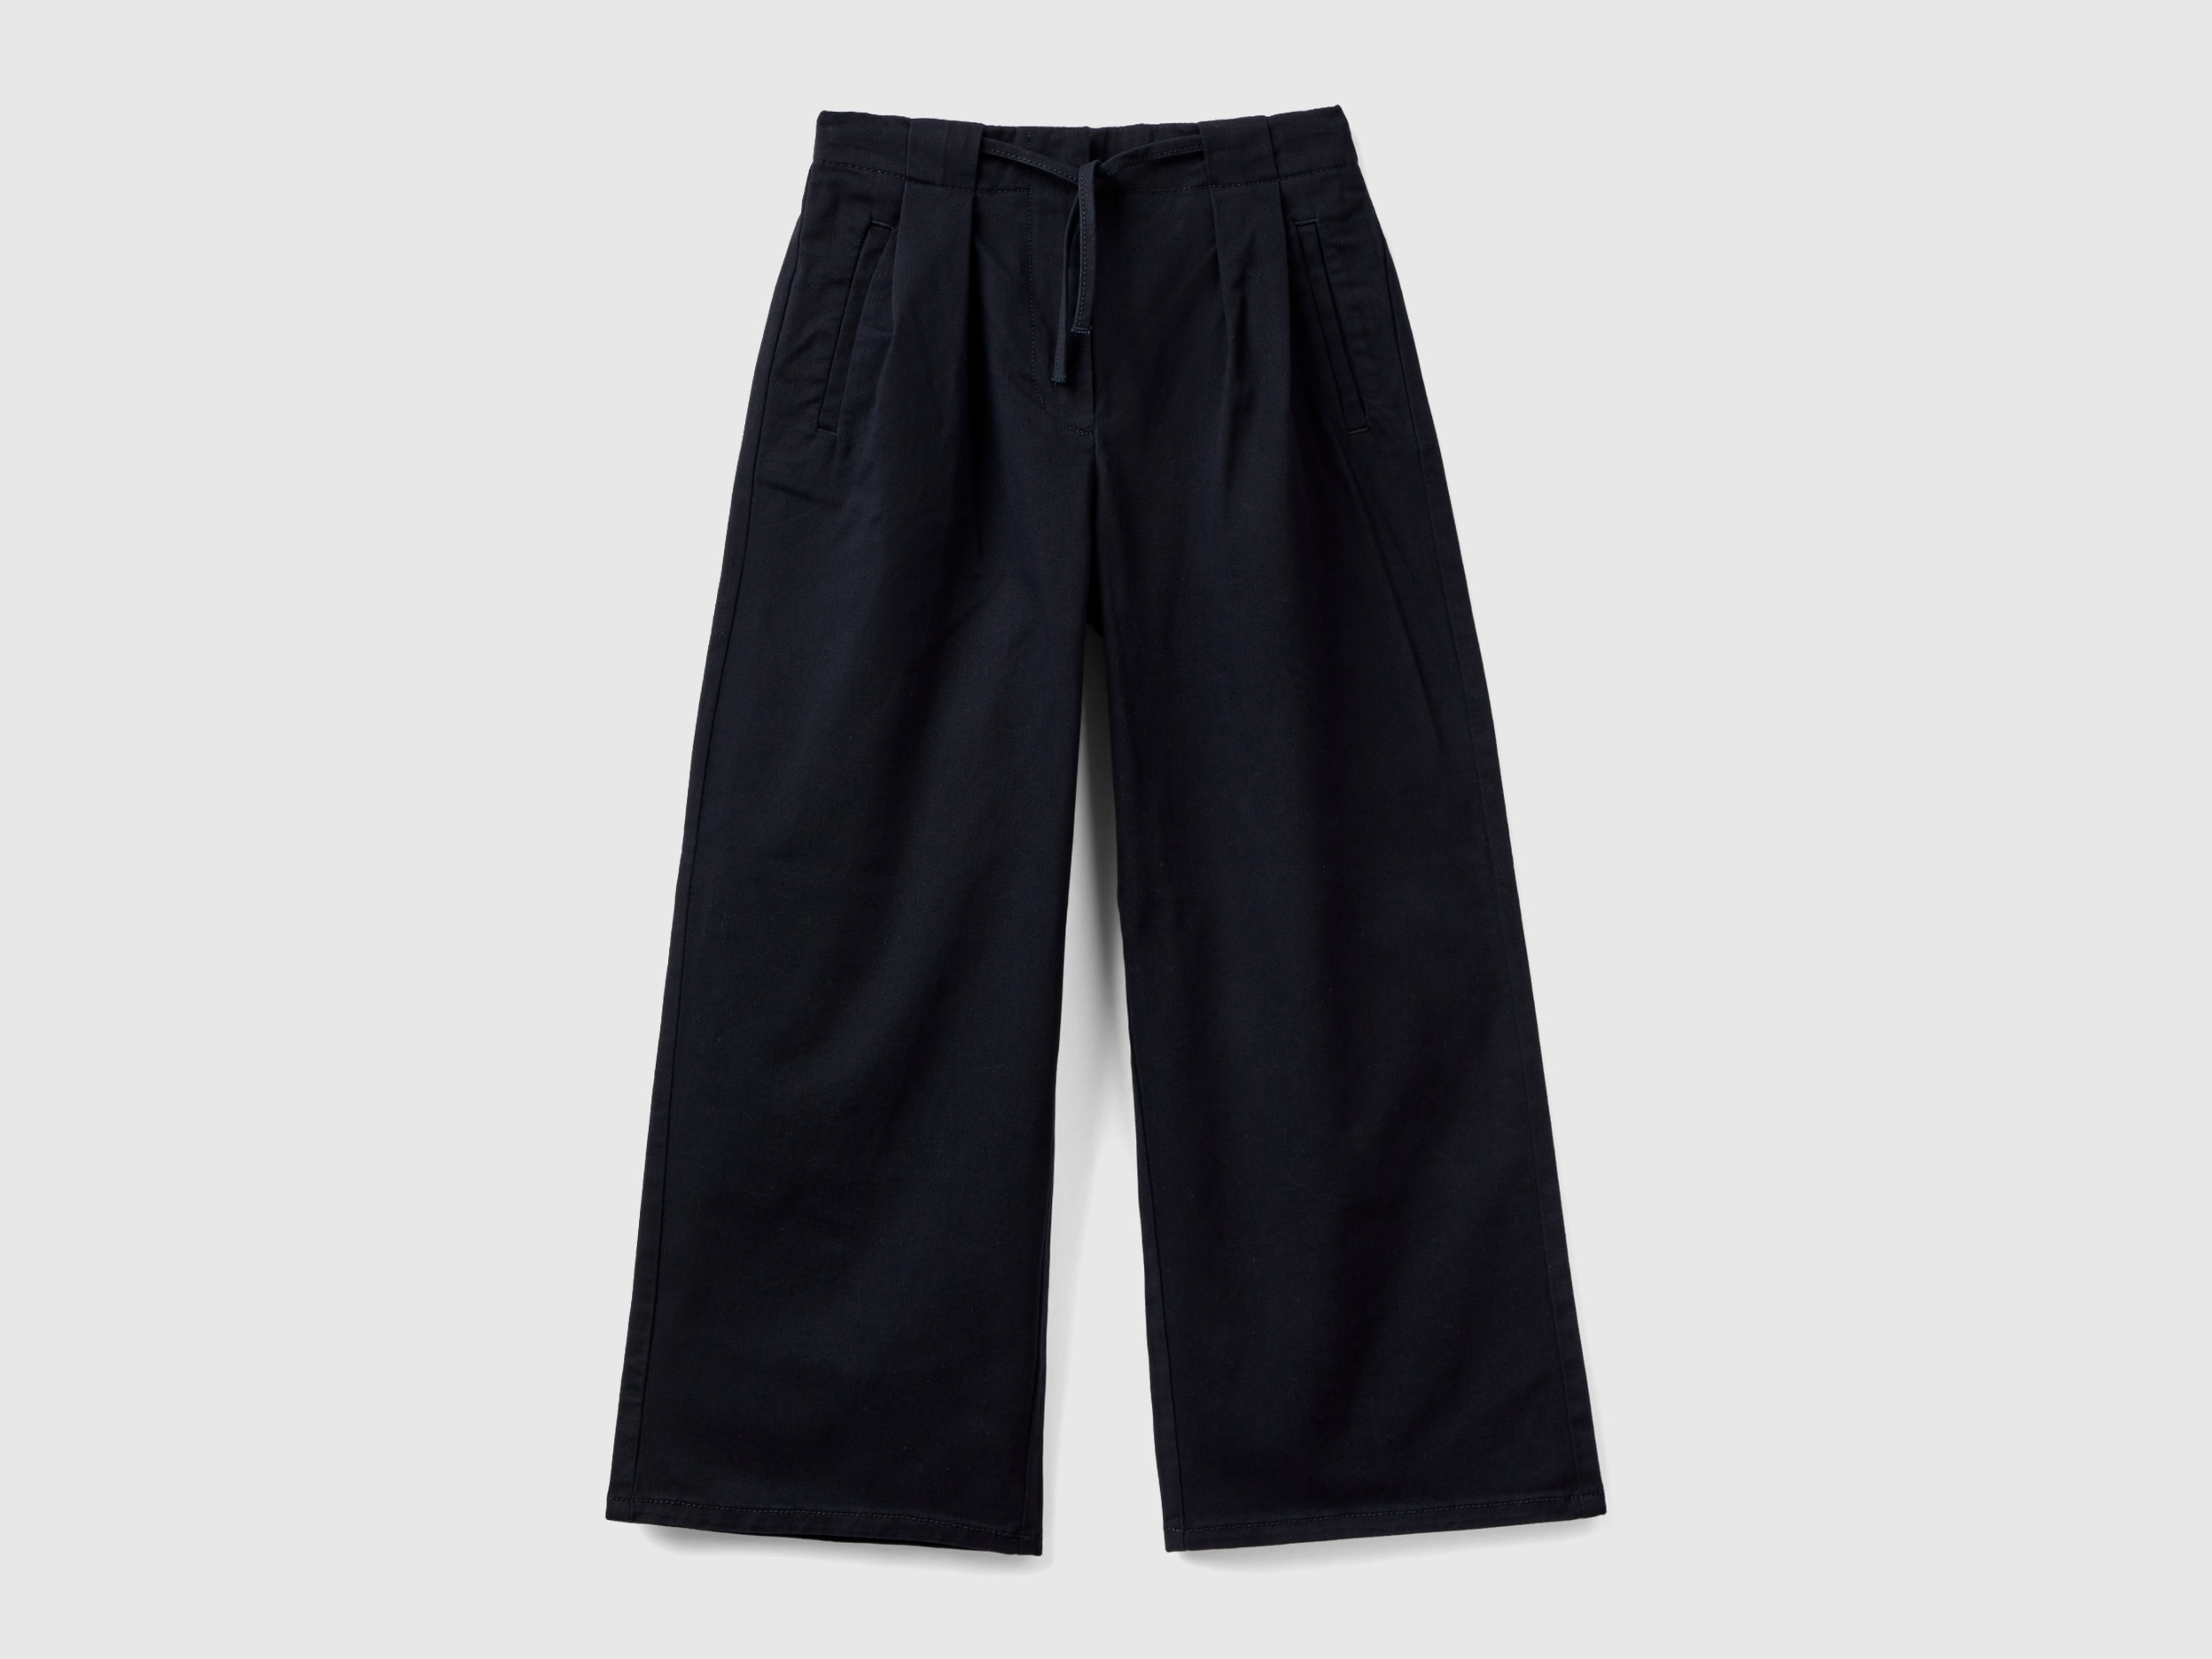 benetton, pantalon large en coton stretch, taille s, noir, enfants